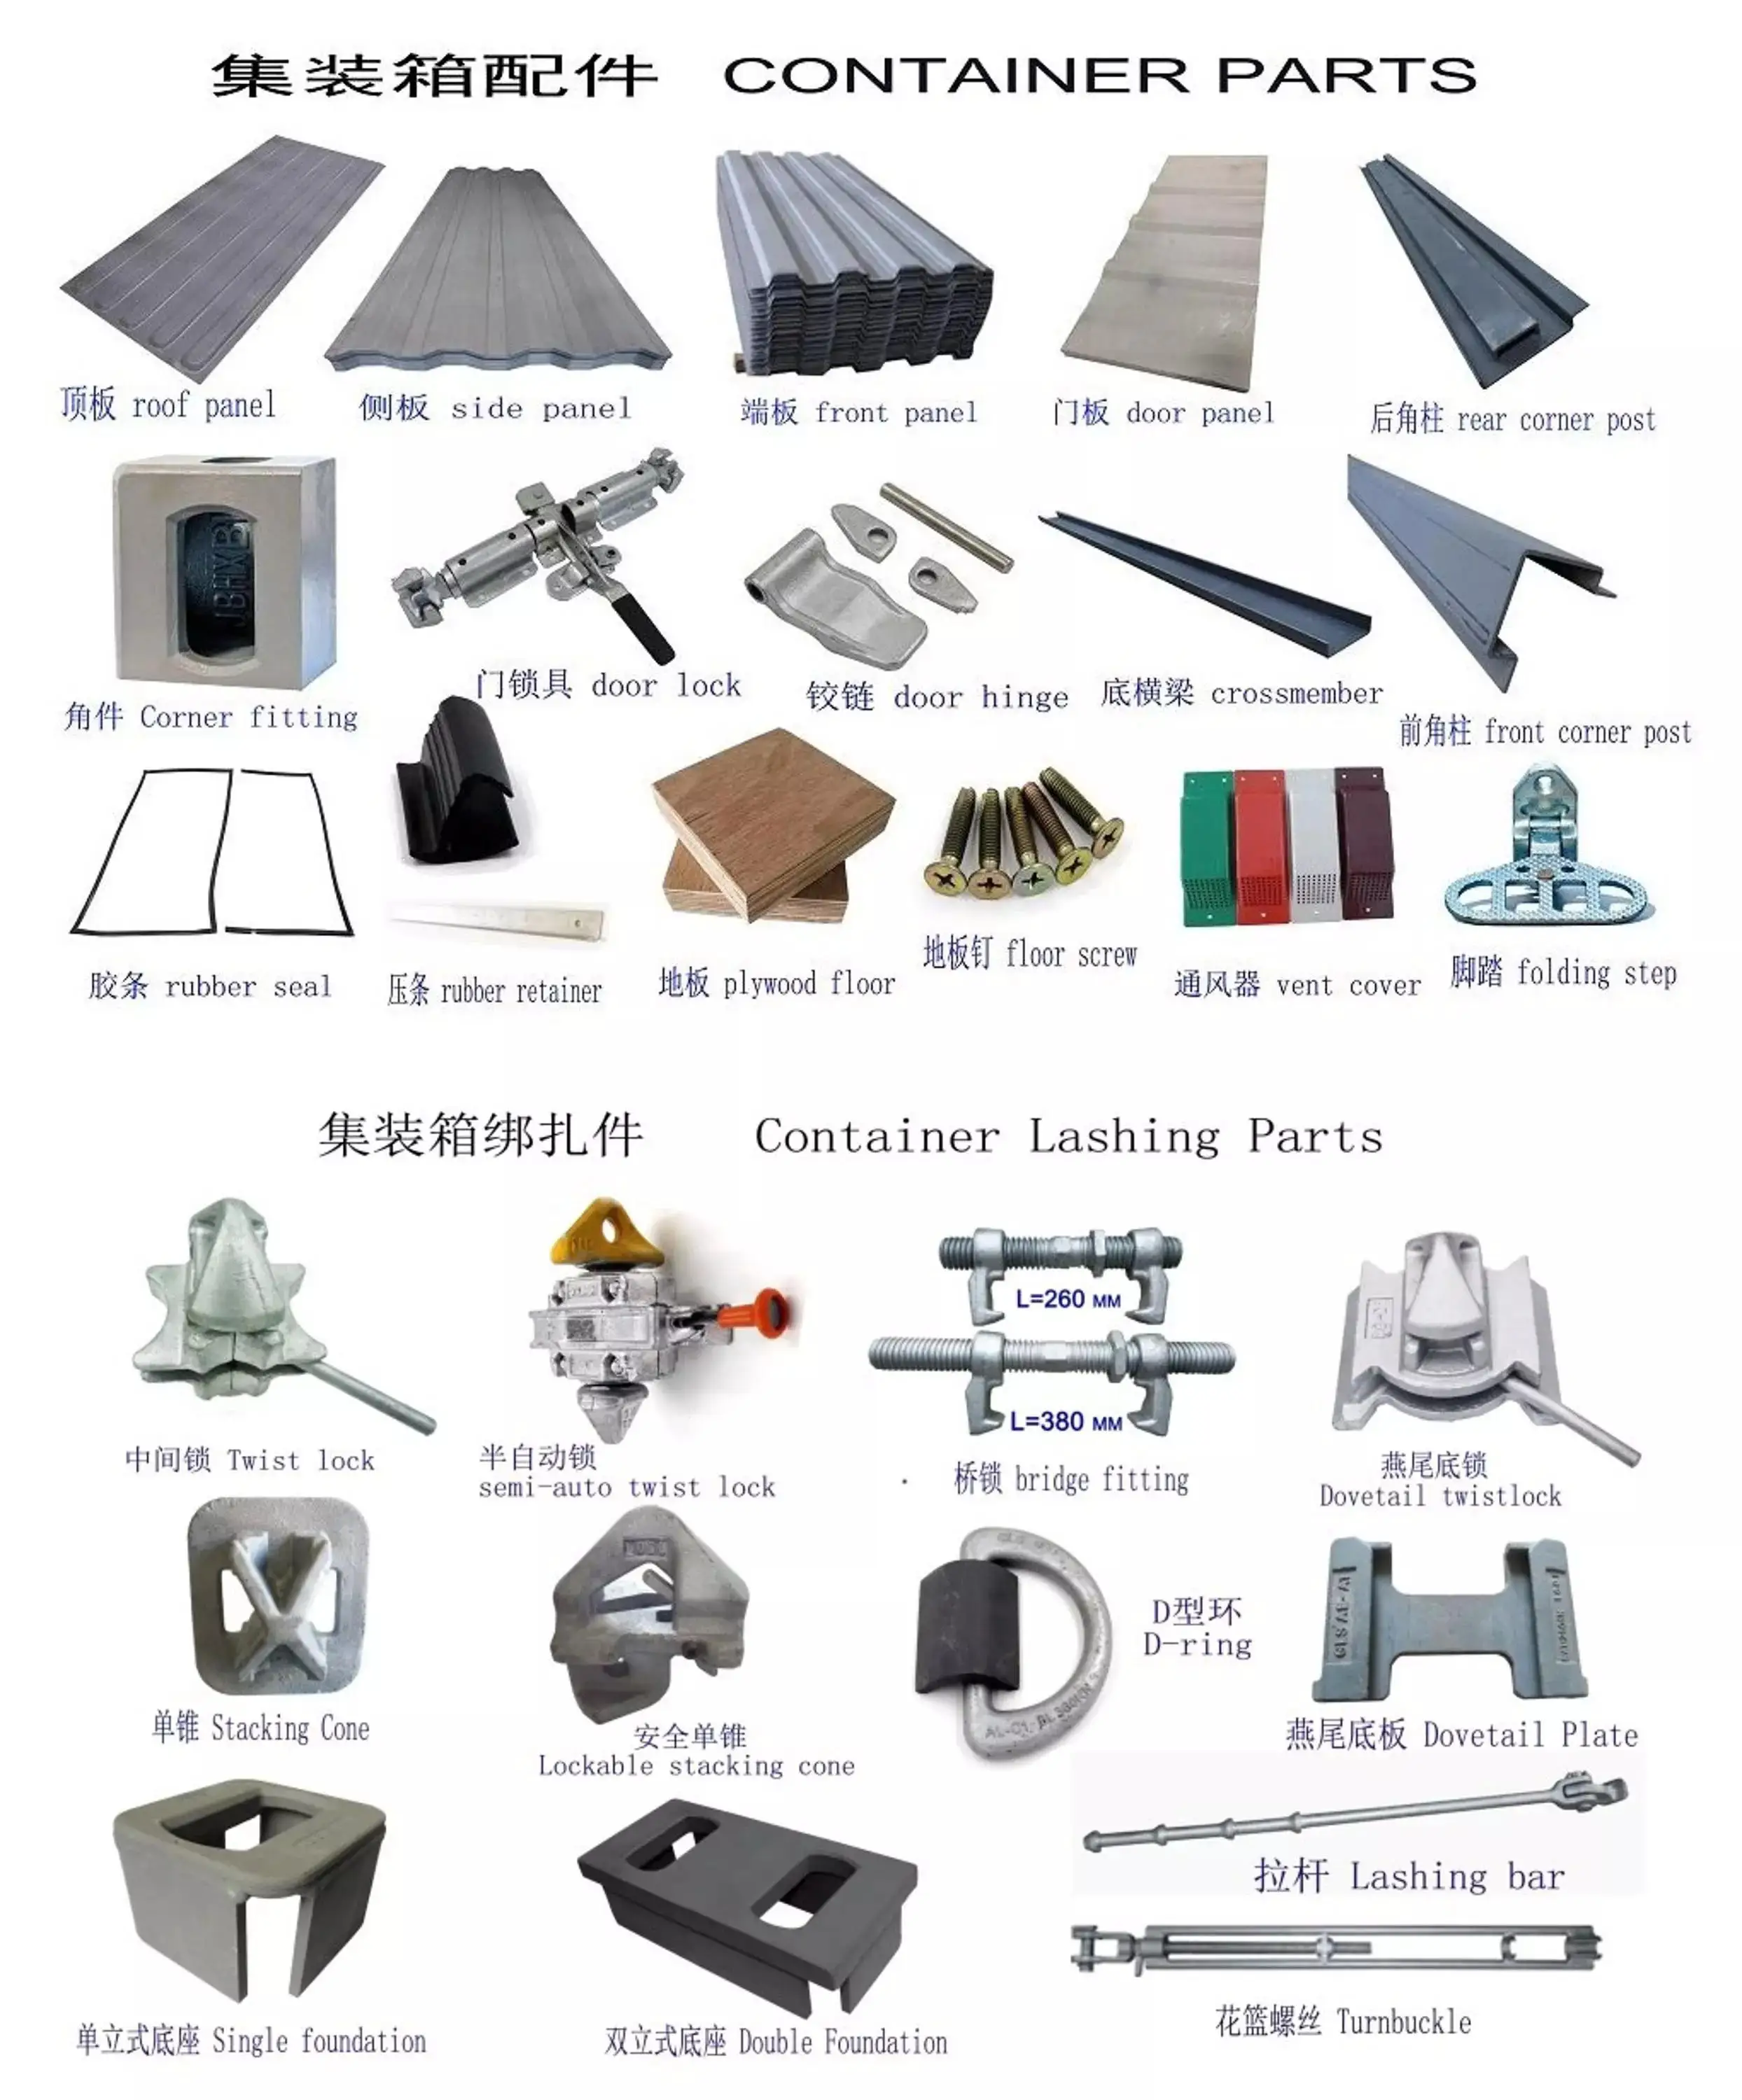 2003,专业生产集装箱分离配件和拉灰配件超过 14 年  历史在中国 7 年